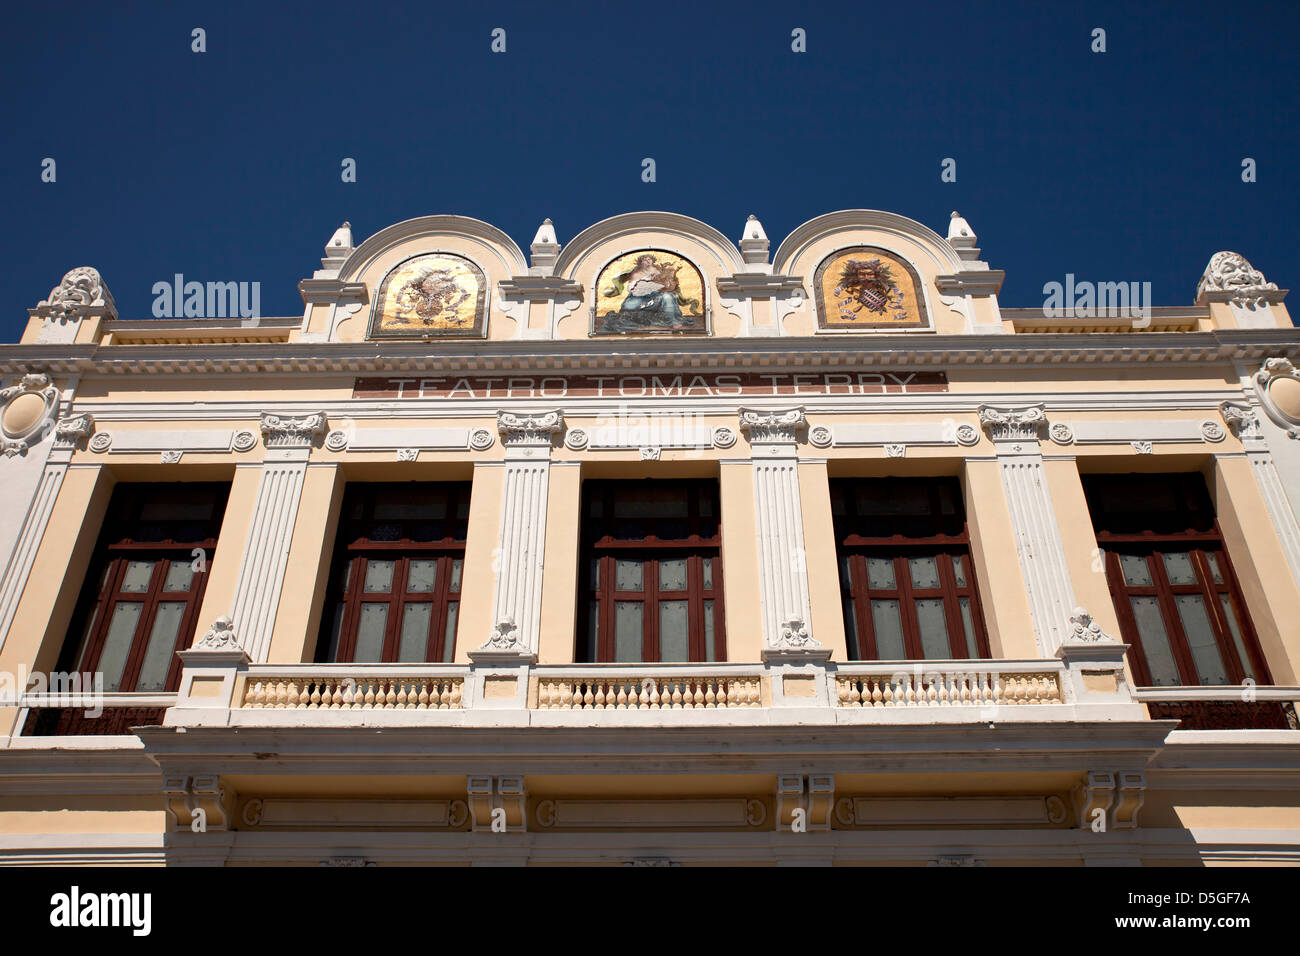 Facade of the Theater Teatro Tomas Terry in Cienfuegos, Cuba, Caribbean Stock Photo